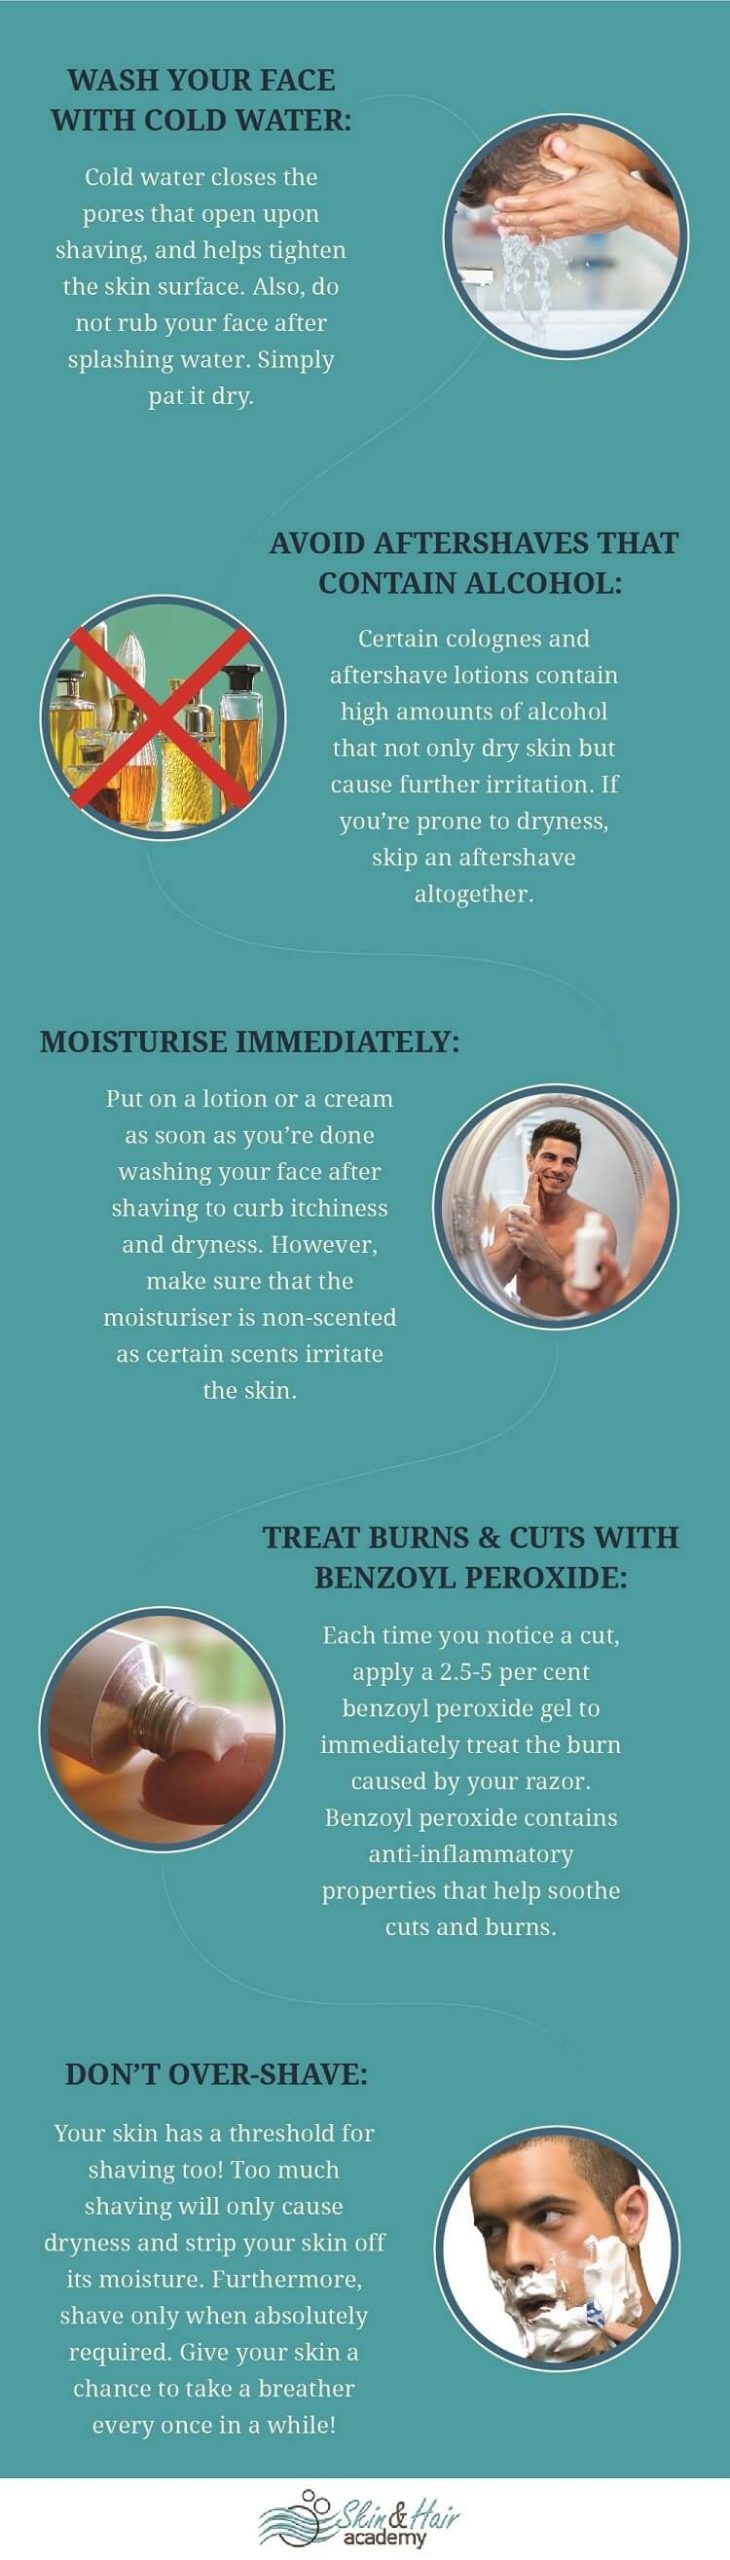 post shaving skin care tips for men